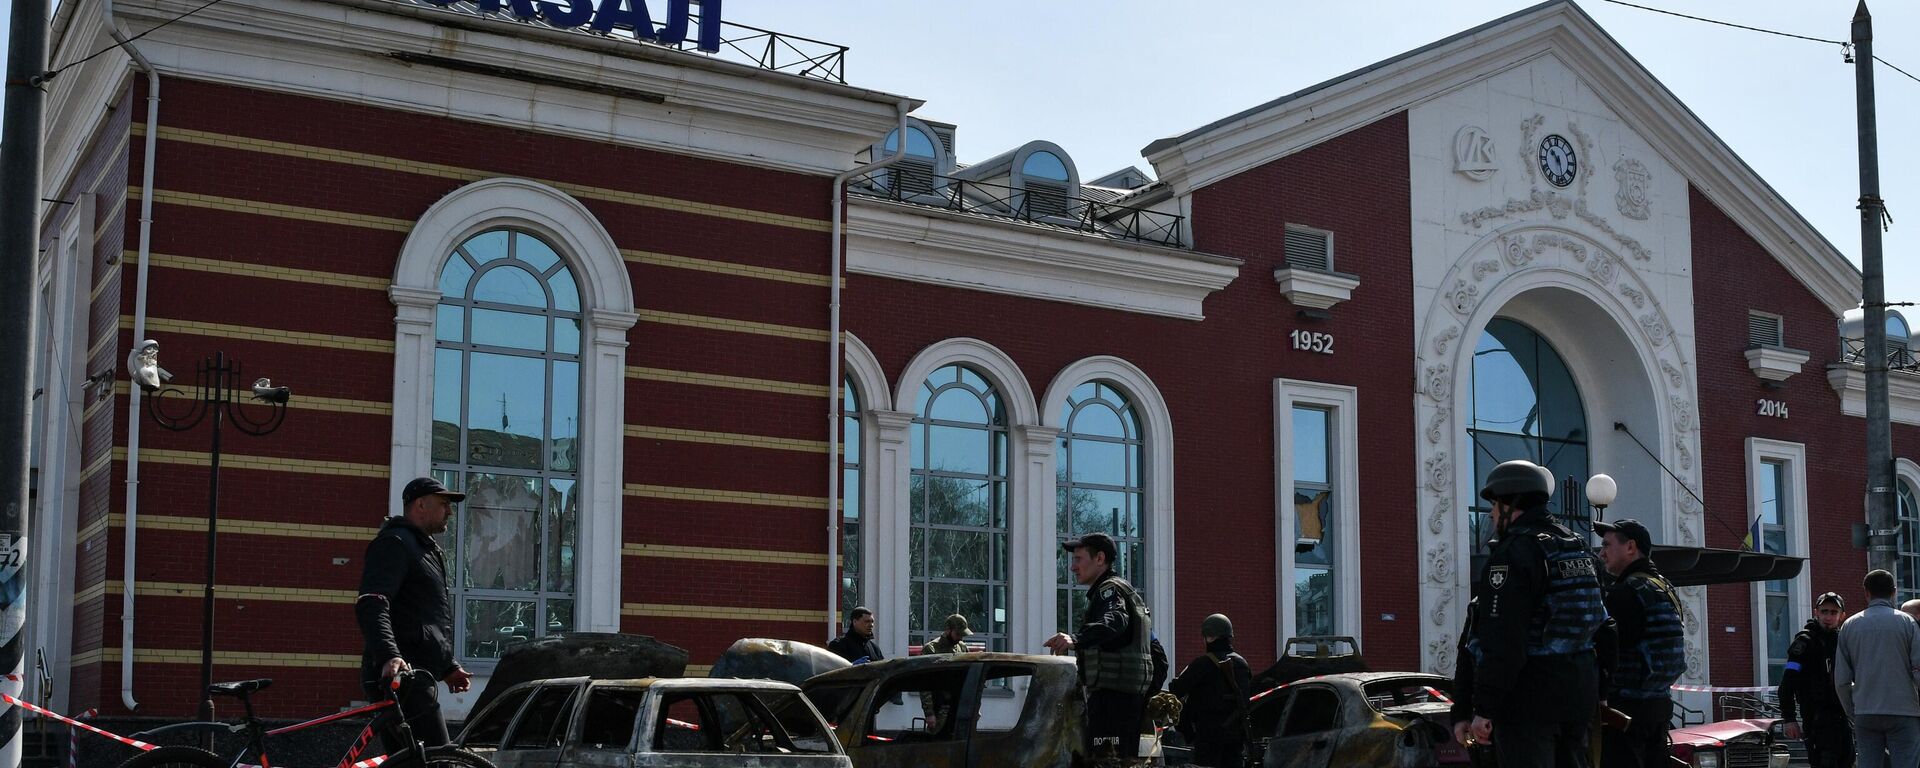  La estación de tren de Kramatorsk, ciudad en el este de Ucrania - Sputnik Mundo, 1920, 08.04.2022